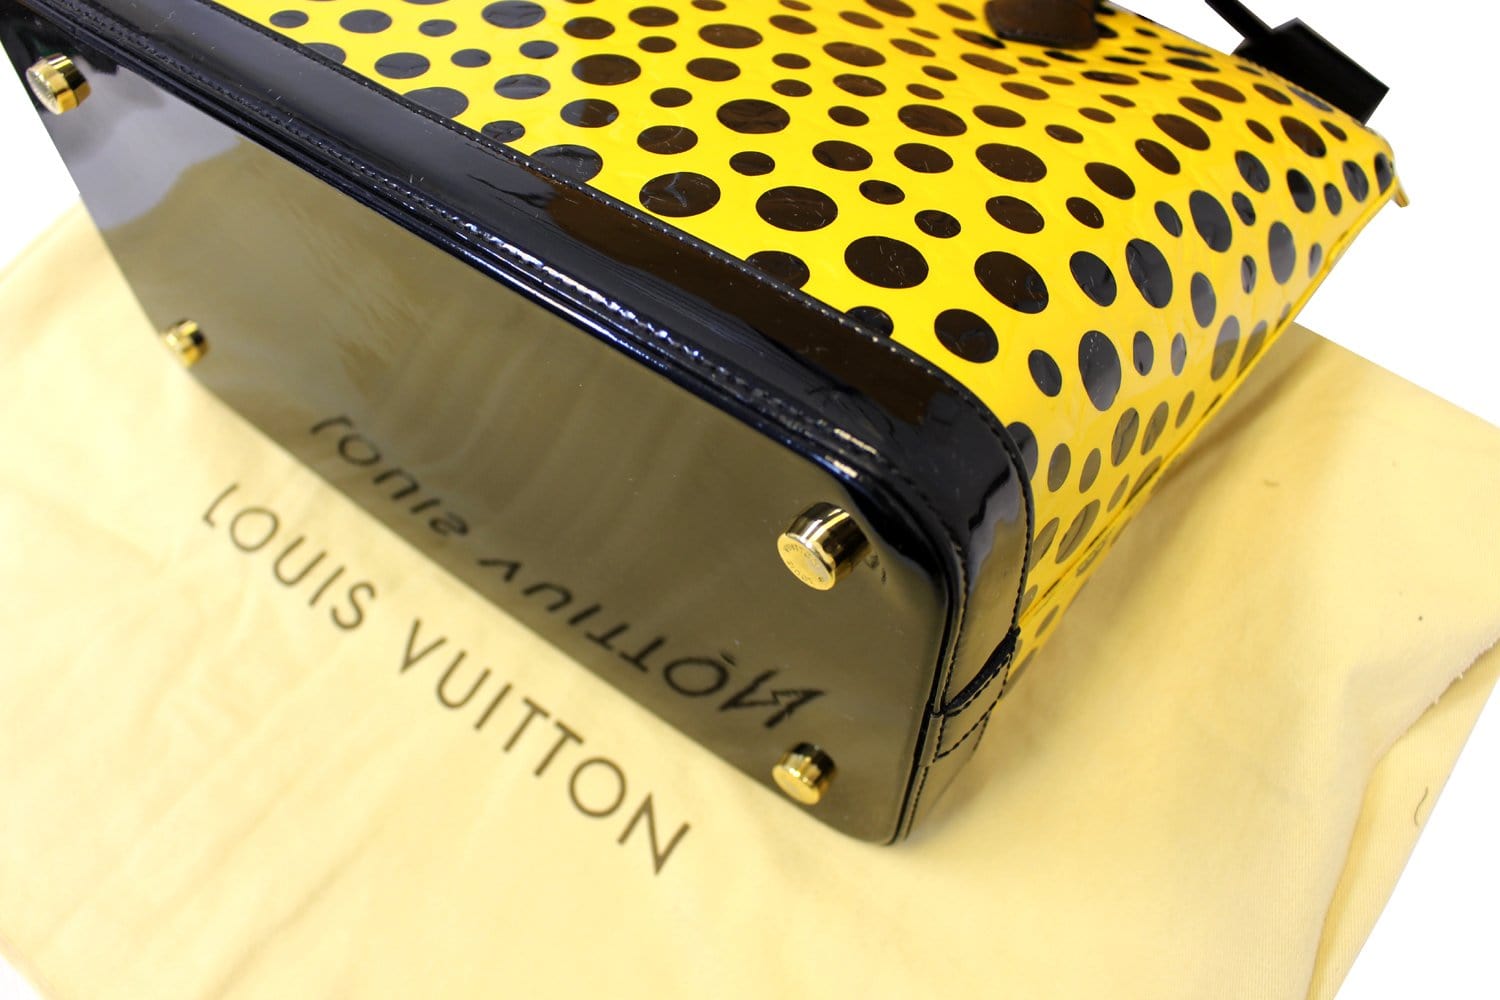 Louis Vuitton Yayoi Kusama Neverfull limited edition yellow tote